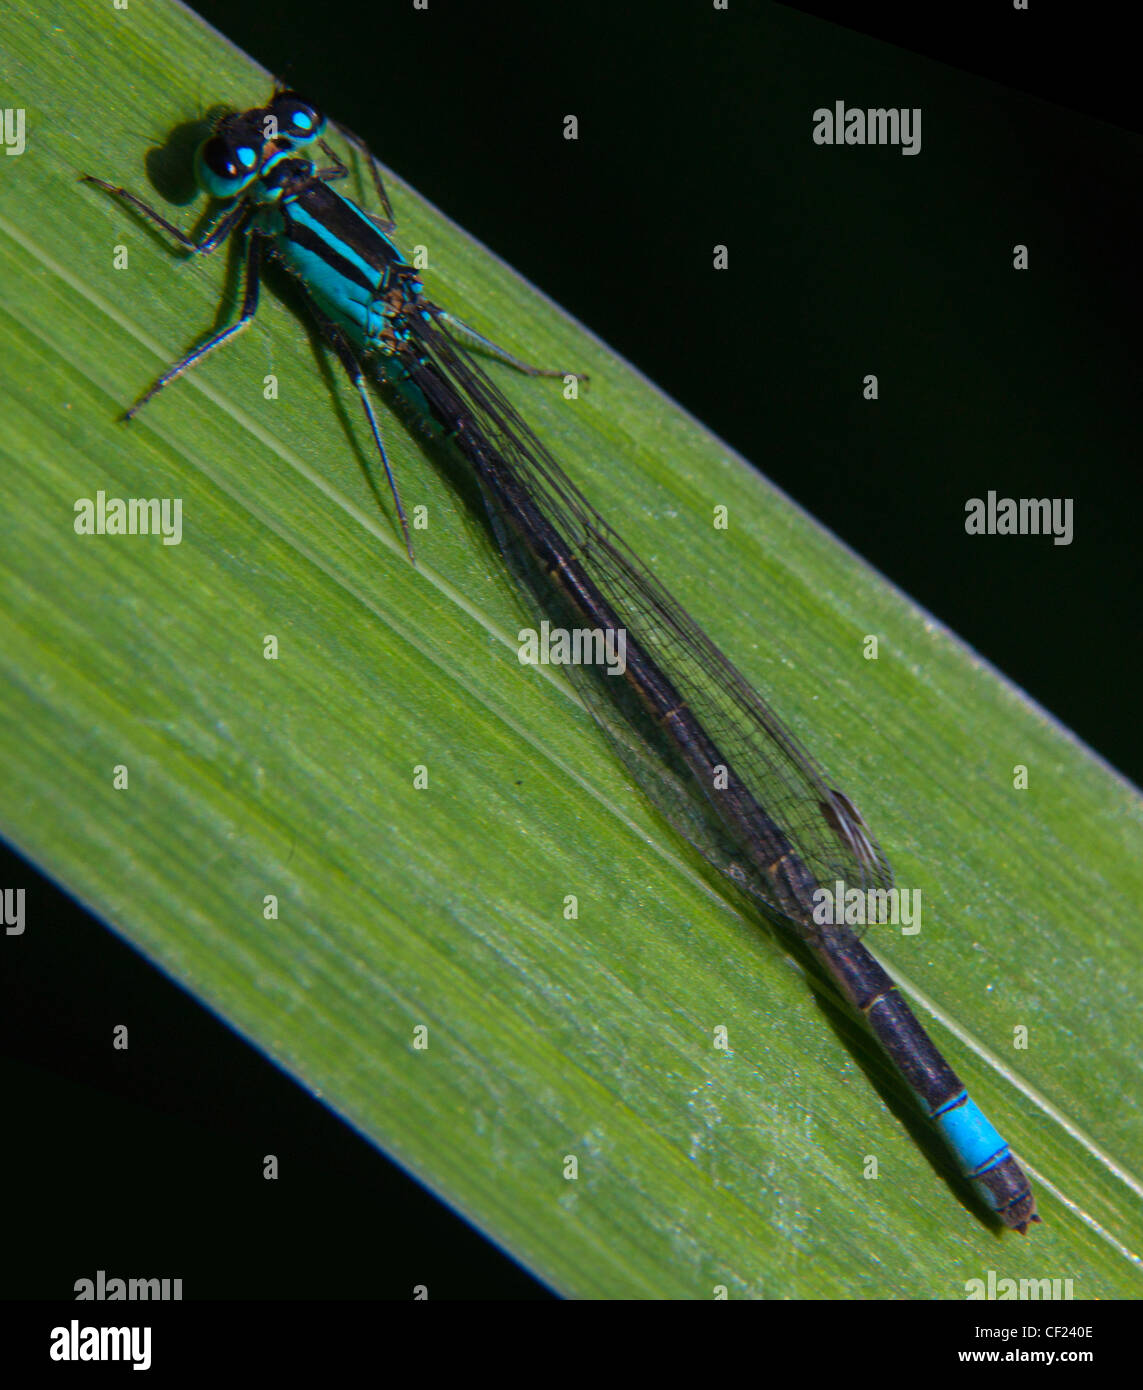 Jeune fille voler (sous-ordre Zygoptera) insectes dans l'ordre des Odonates. C'est un exemple de l'échantillon bleu assis sur une herbe rush Banque D'Images